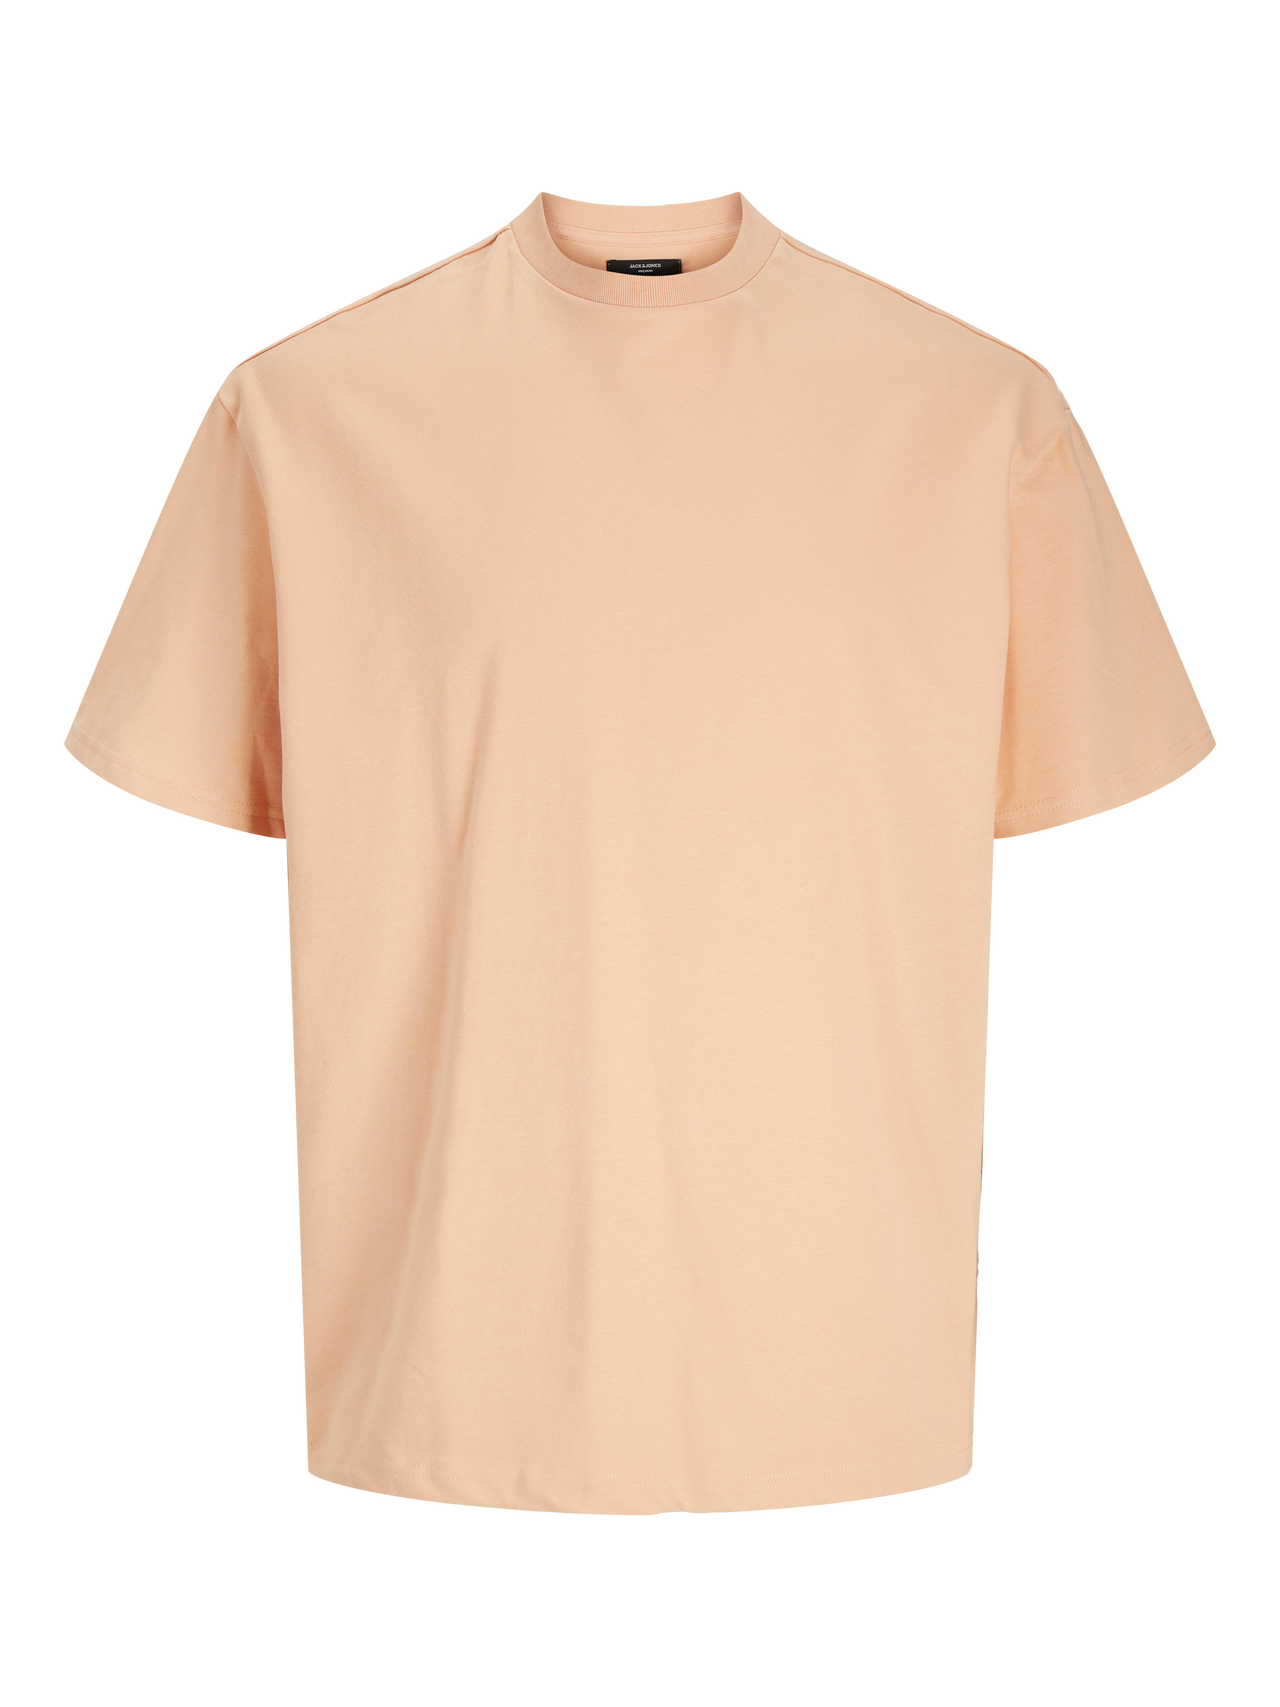 Jack & Jones Enfärgat Rundringning T-shirt -Peach Nougat  - 12255176